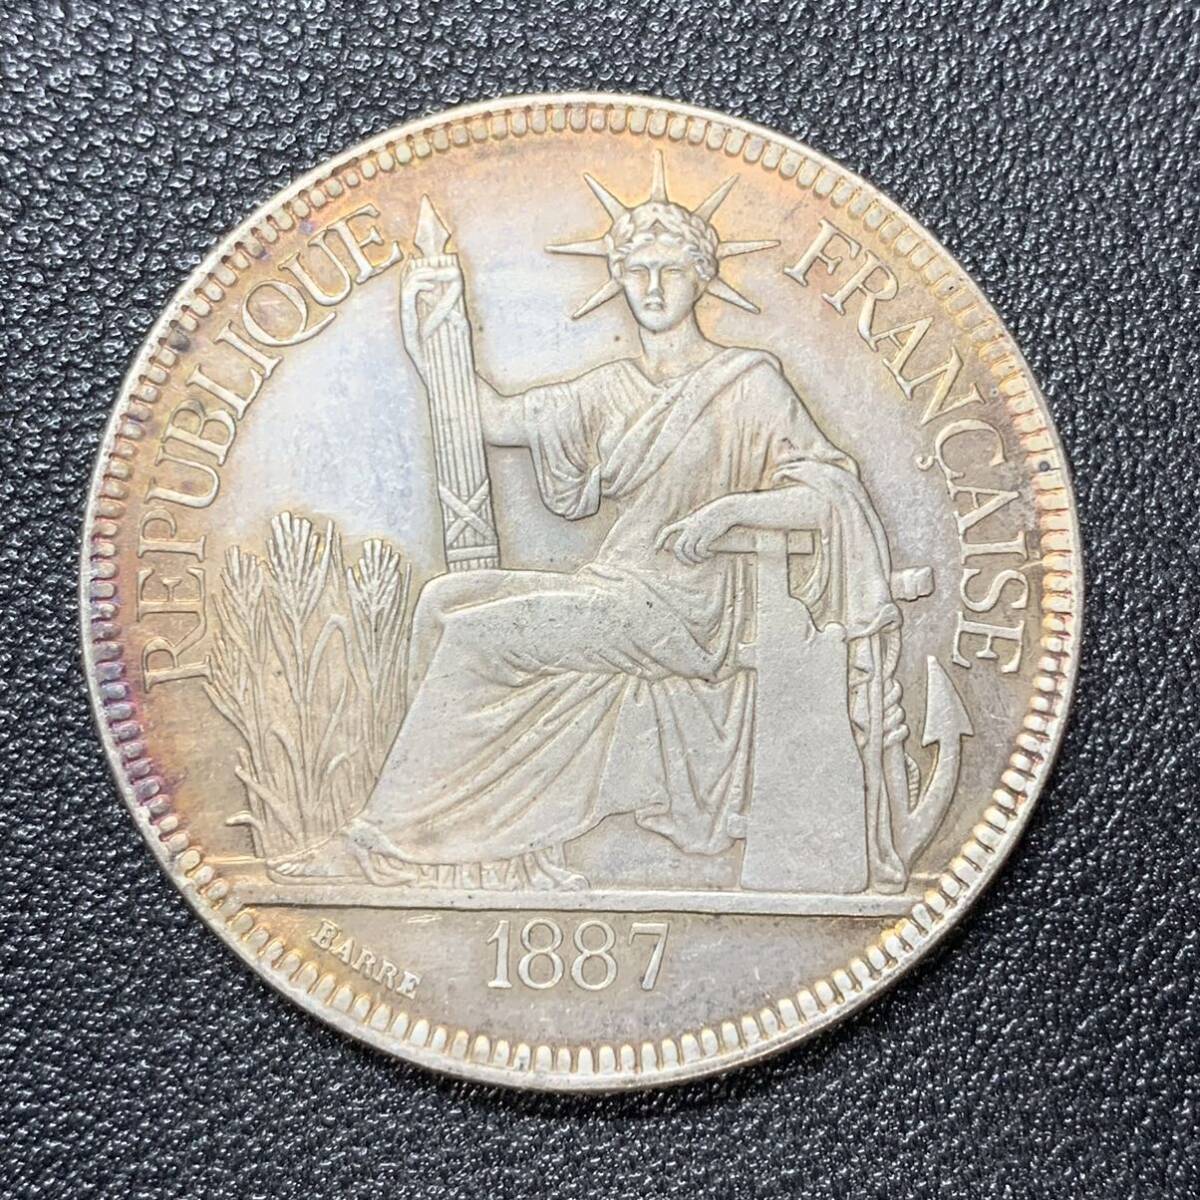 銀貨 古銭 フランス領インドシナドル 1887年 自由の女神デザイン コイン 硬貨 の画像1